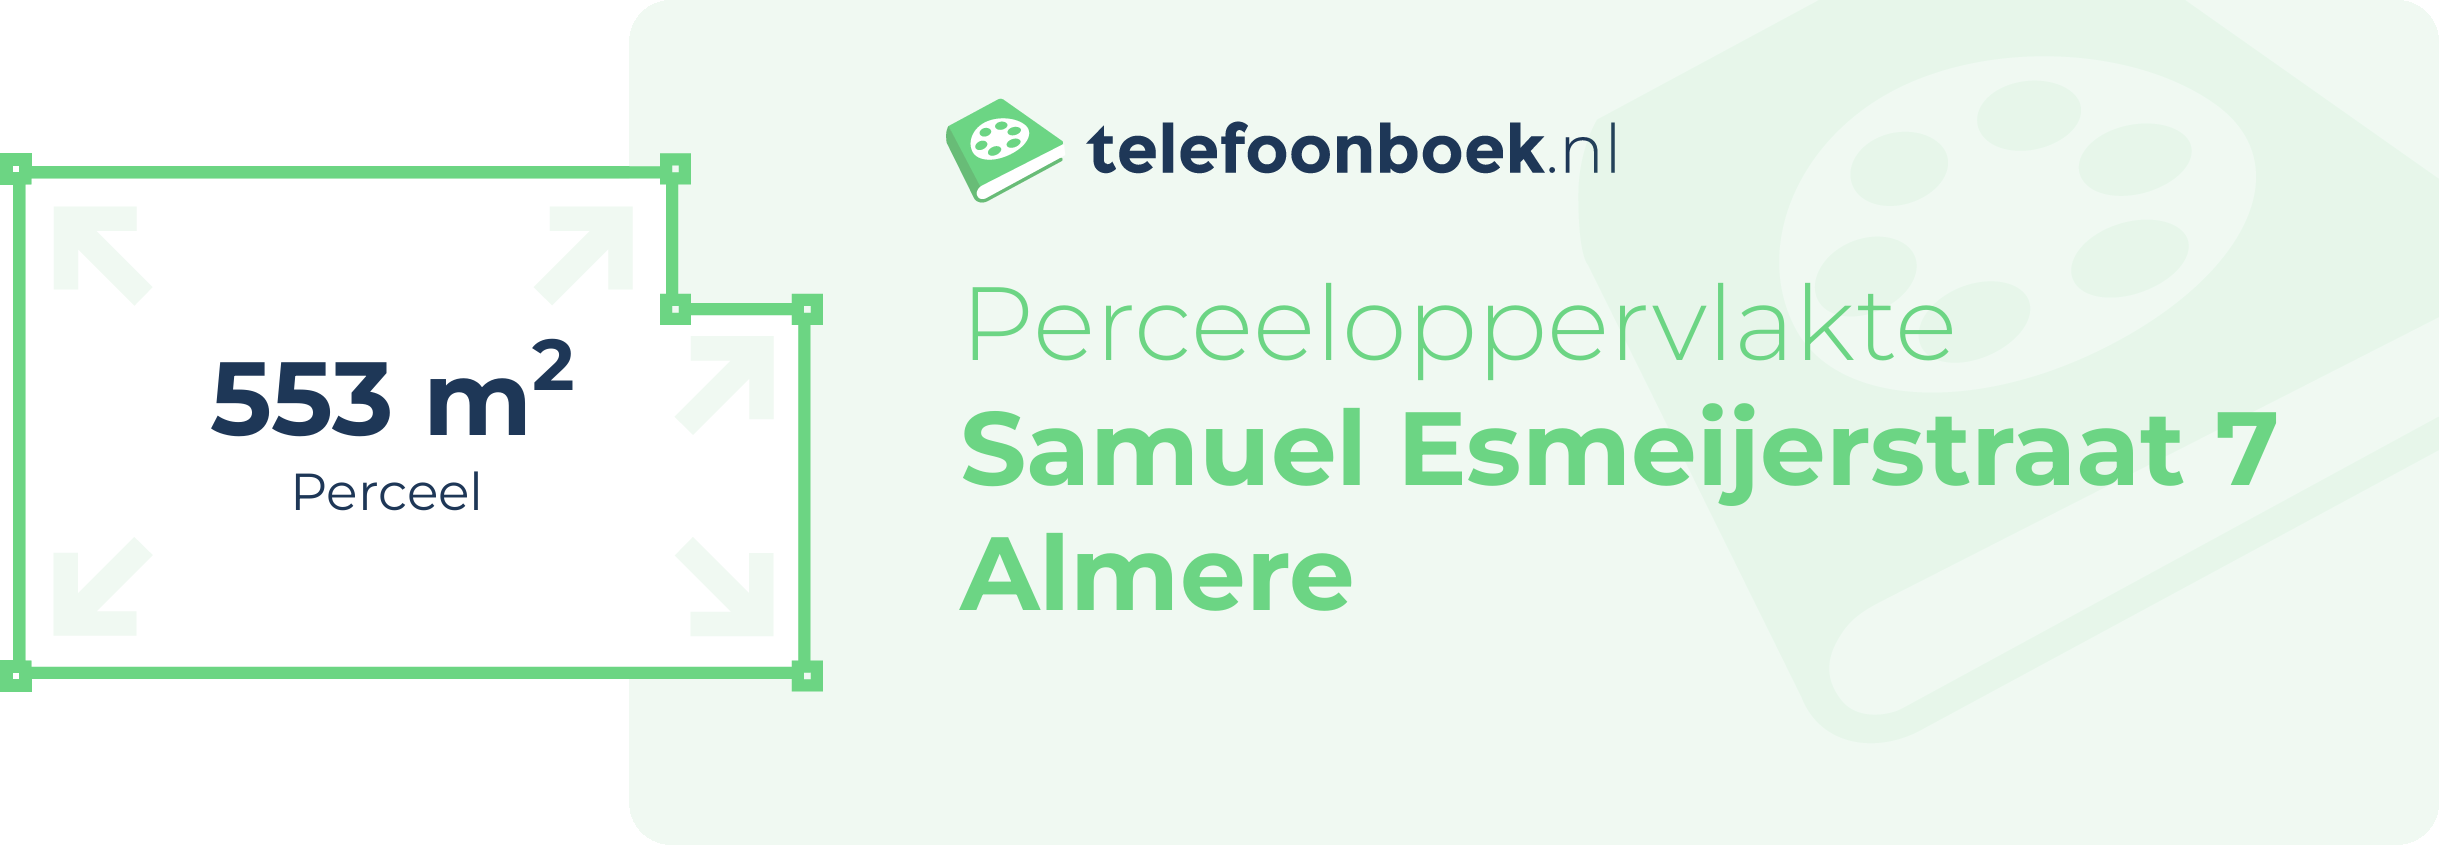 Perceeloppervlakte Samuel Esmeijerstraat 7 Almere